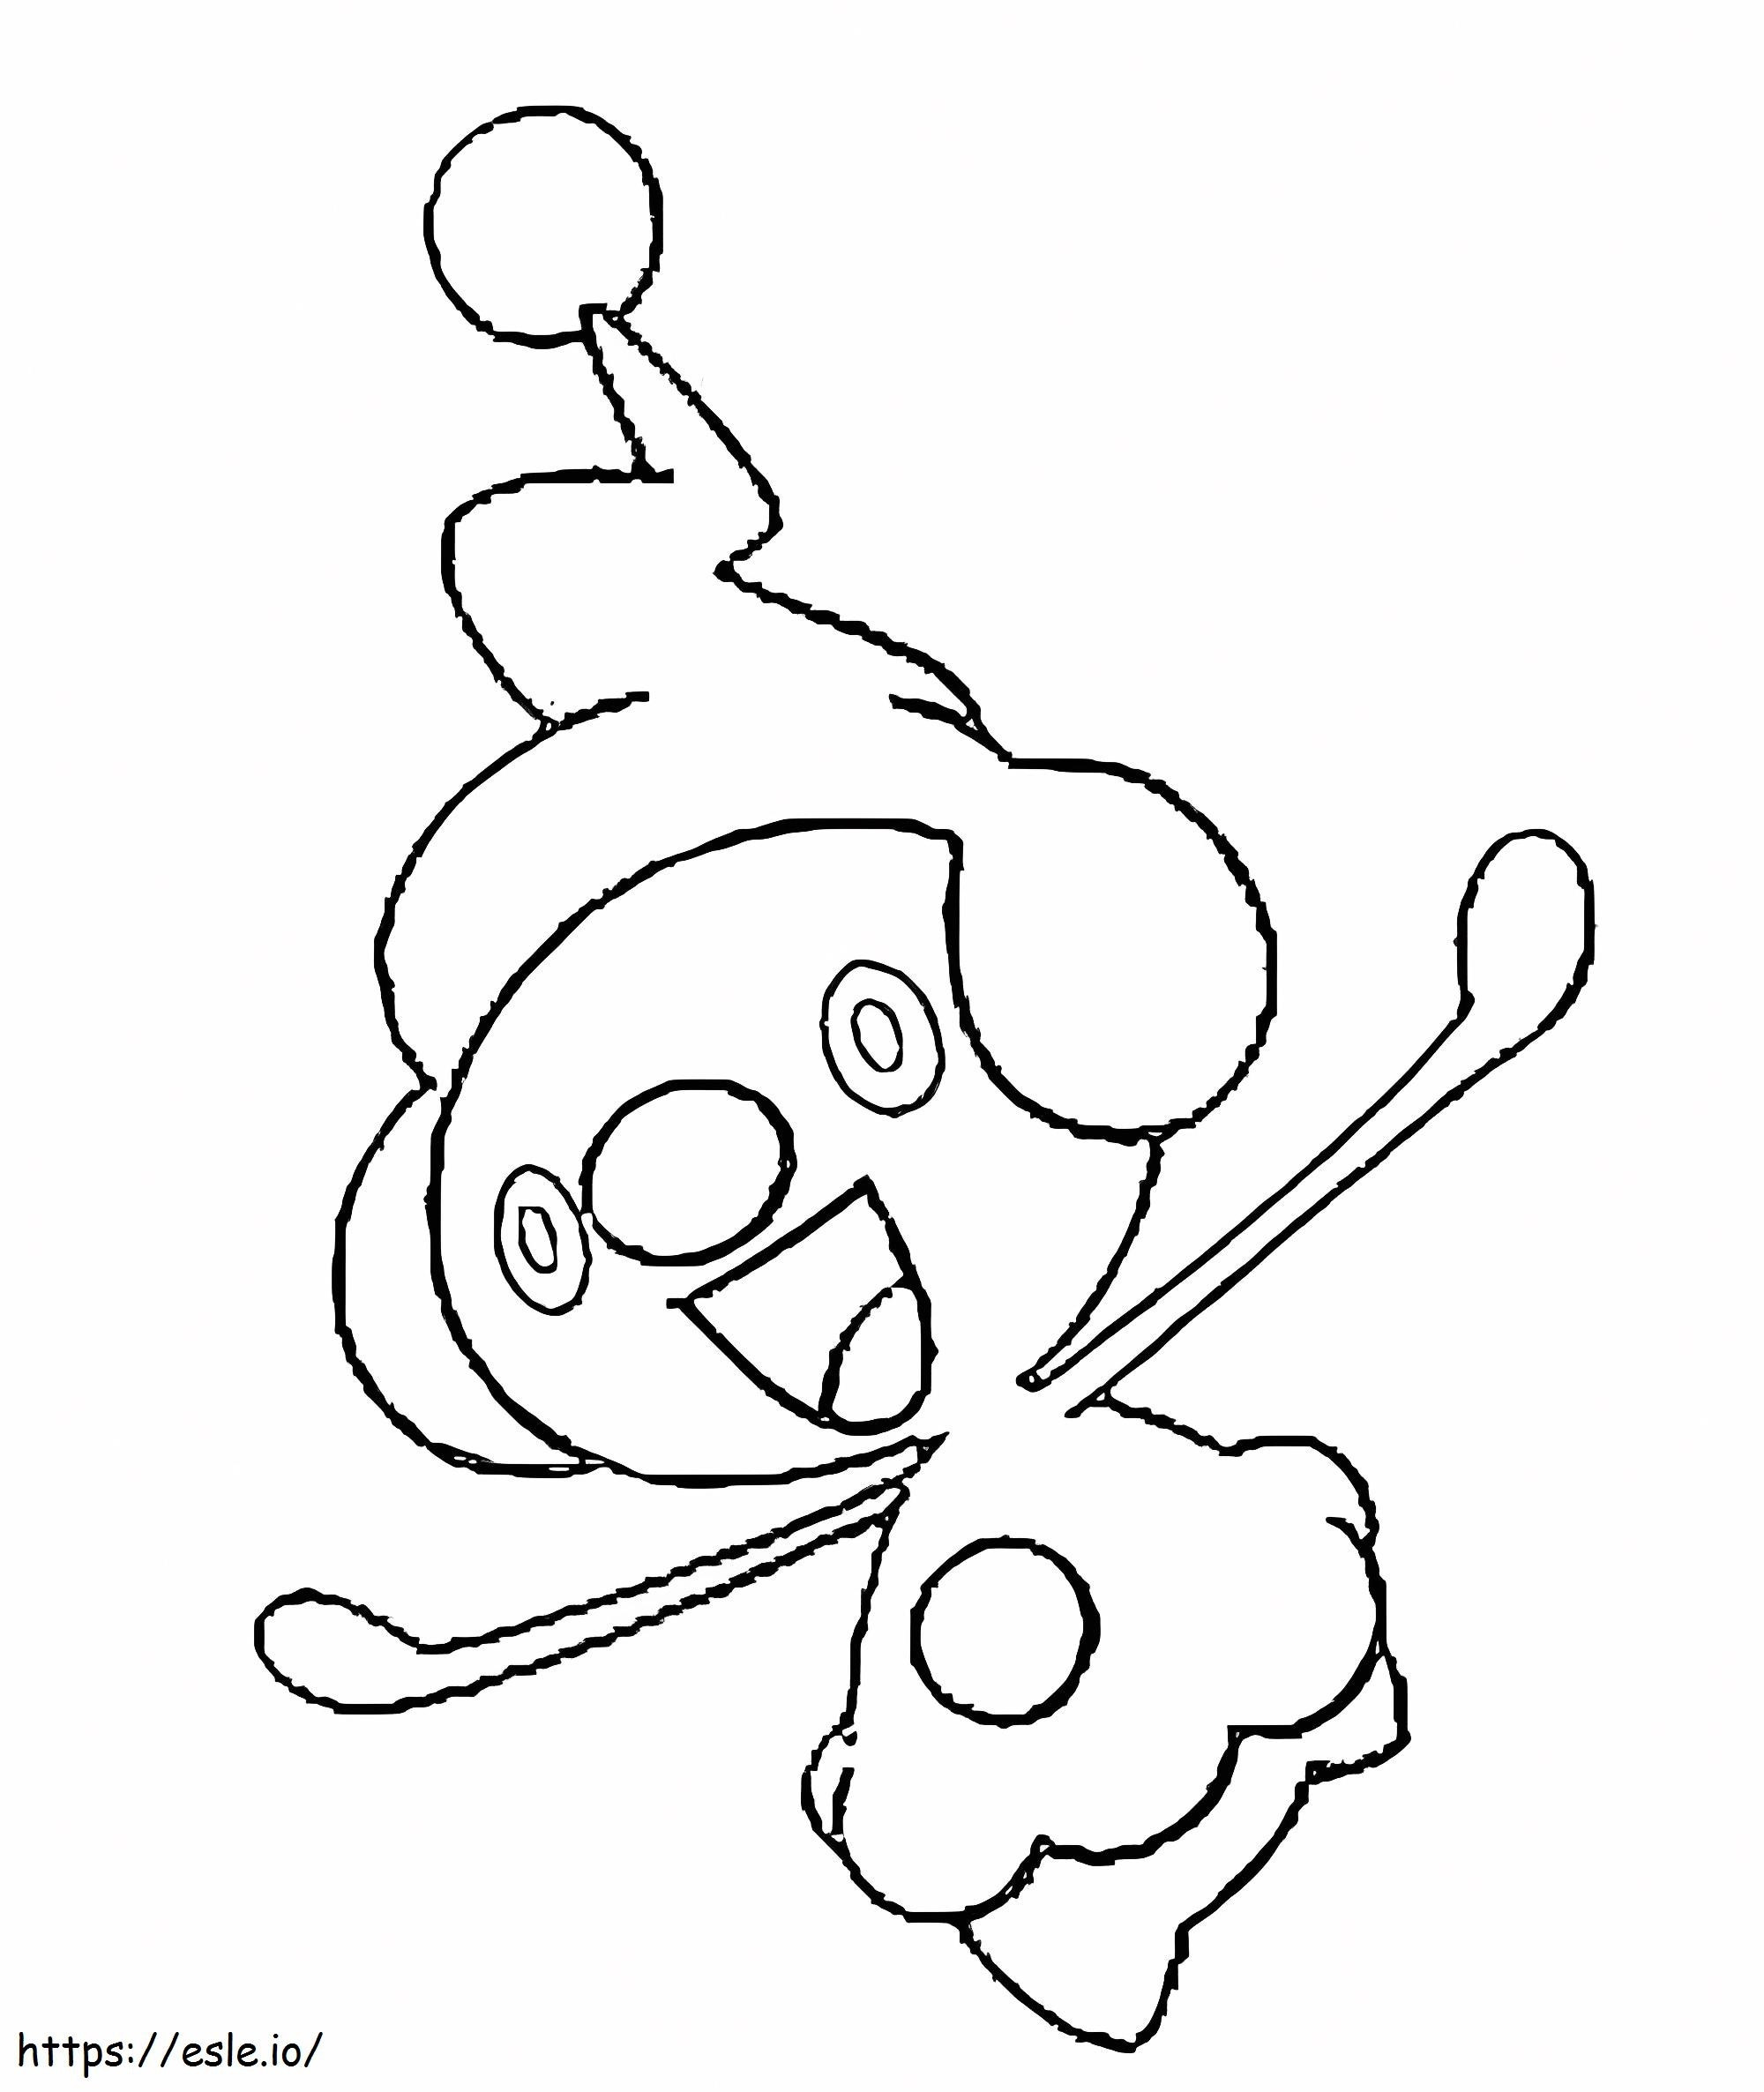 Mime Jr Gen 4 Pokemon coloring page